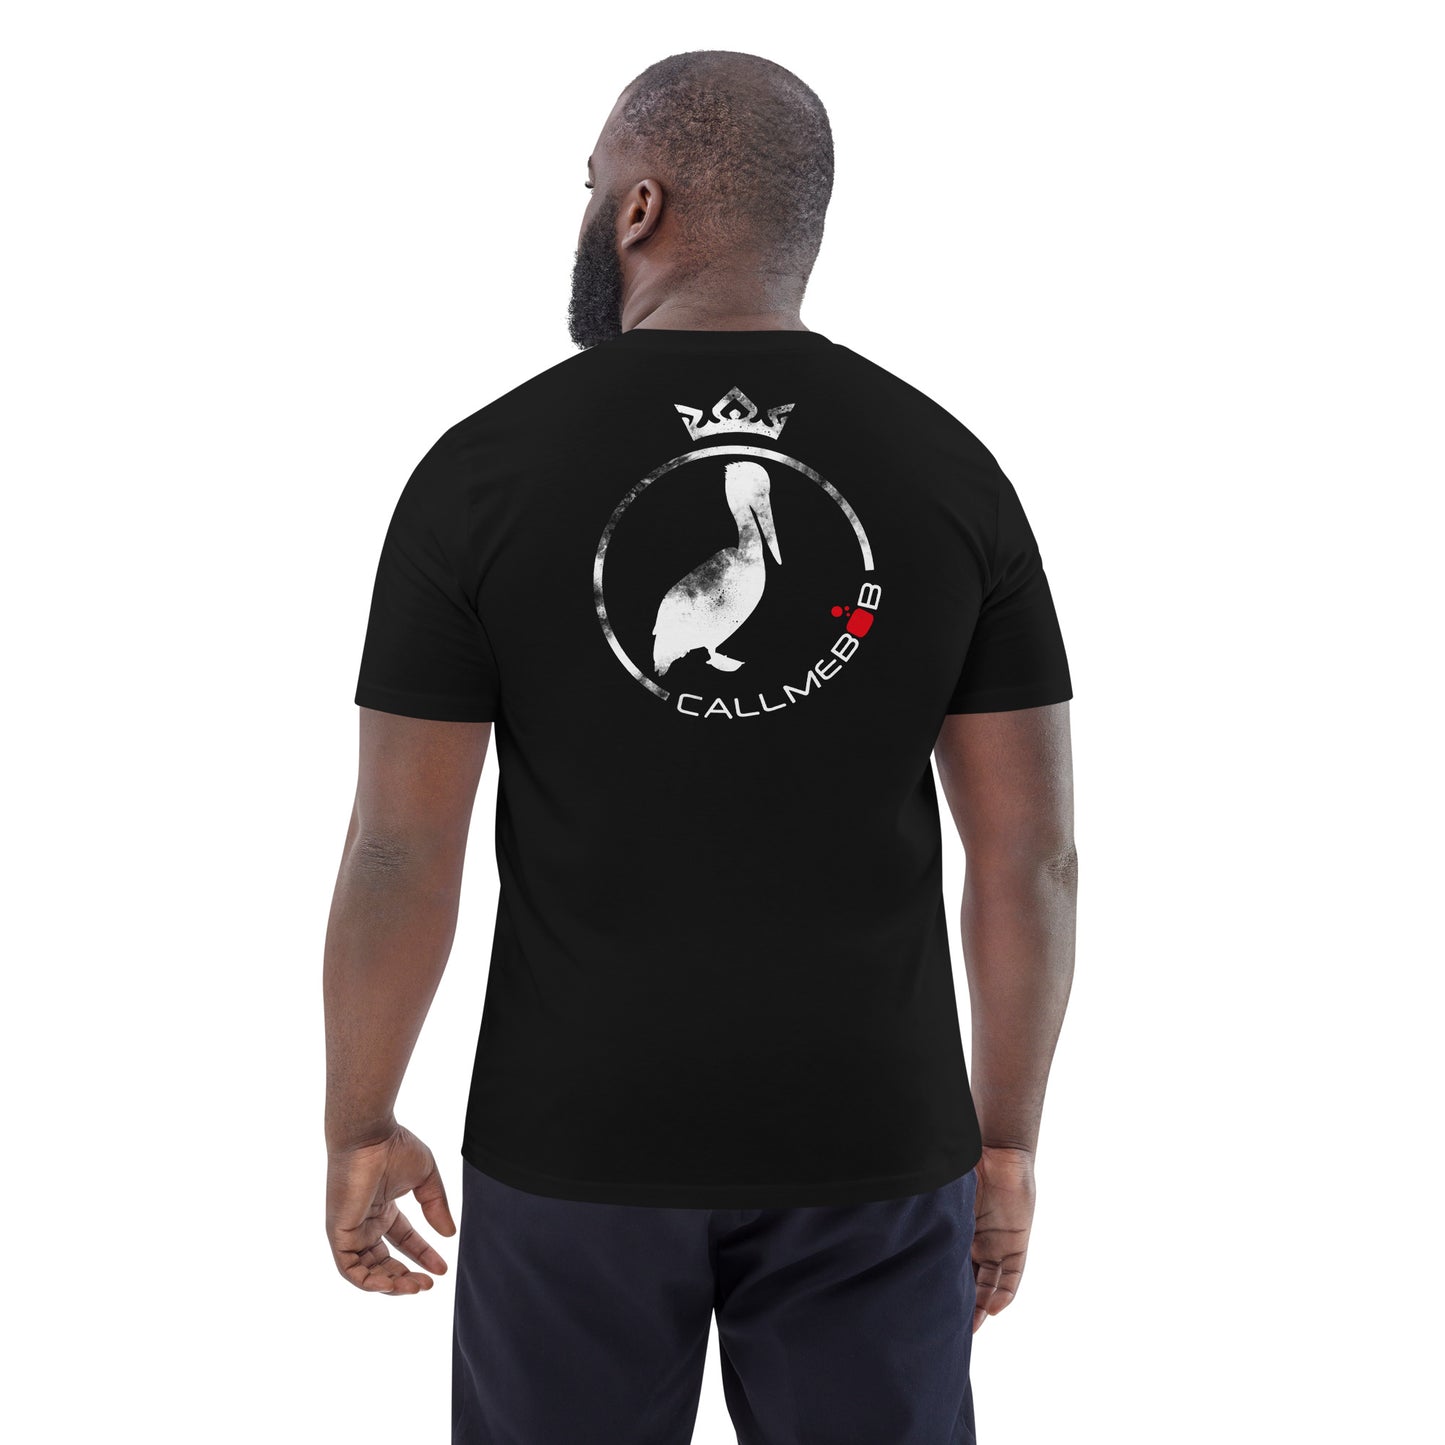 Pelican, camiseta de algodón orgánico